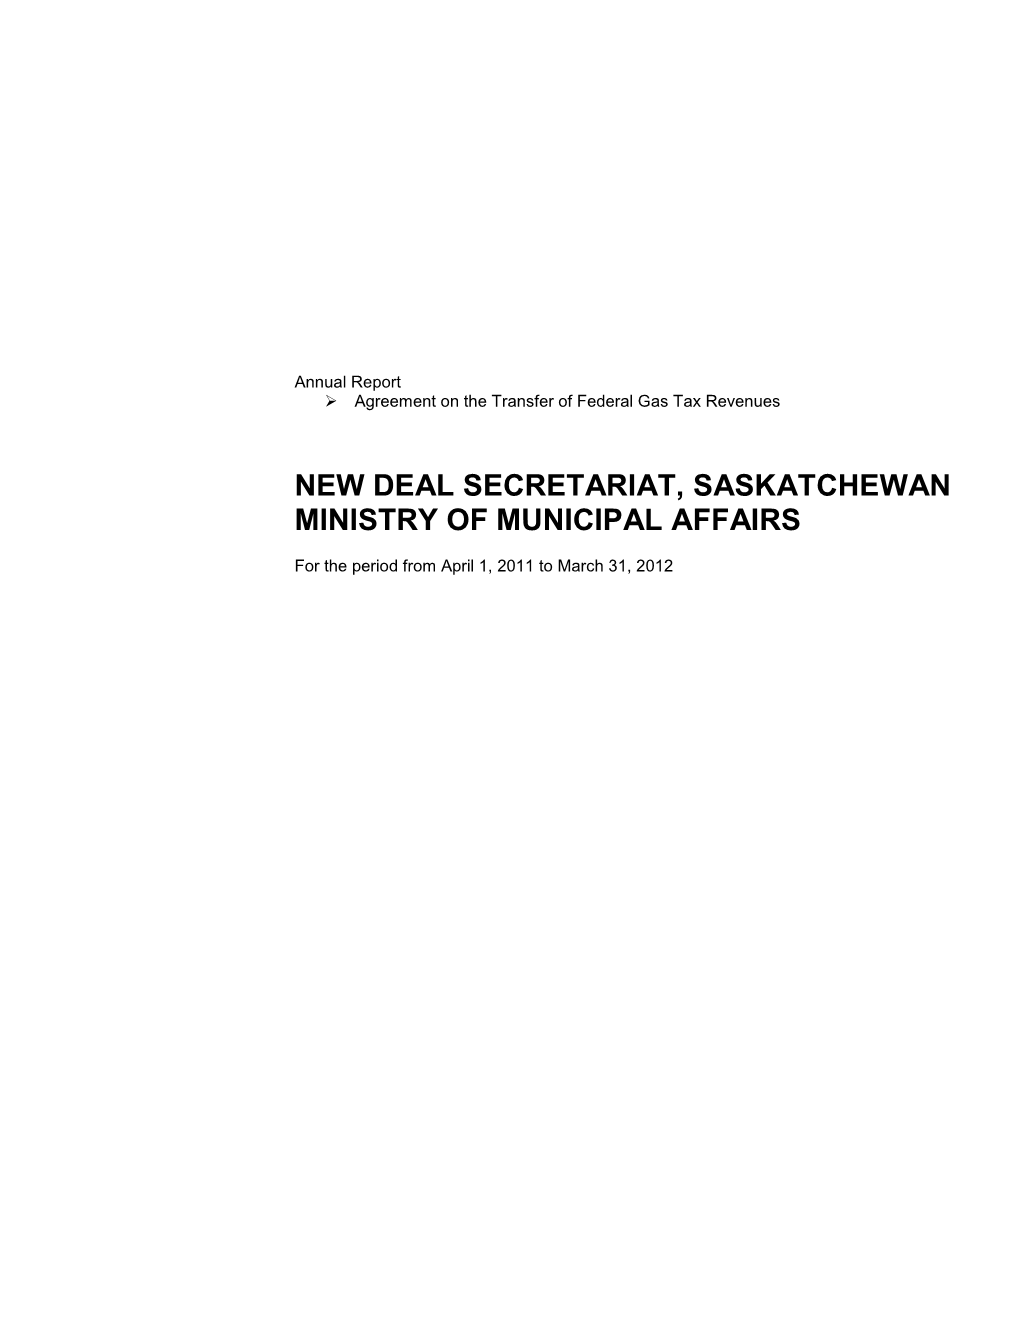 New Deal Secretariat, Saskatchewan Ministry of Municipal Affairs